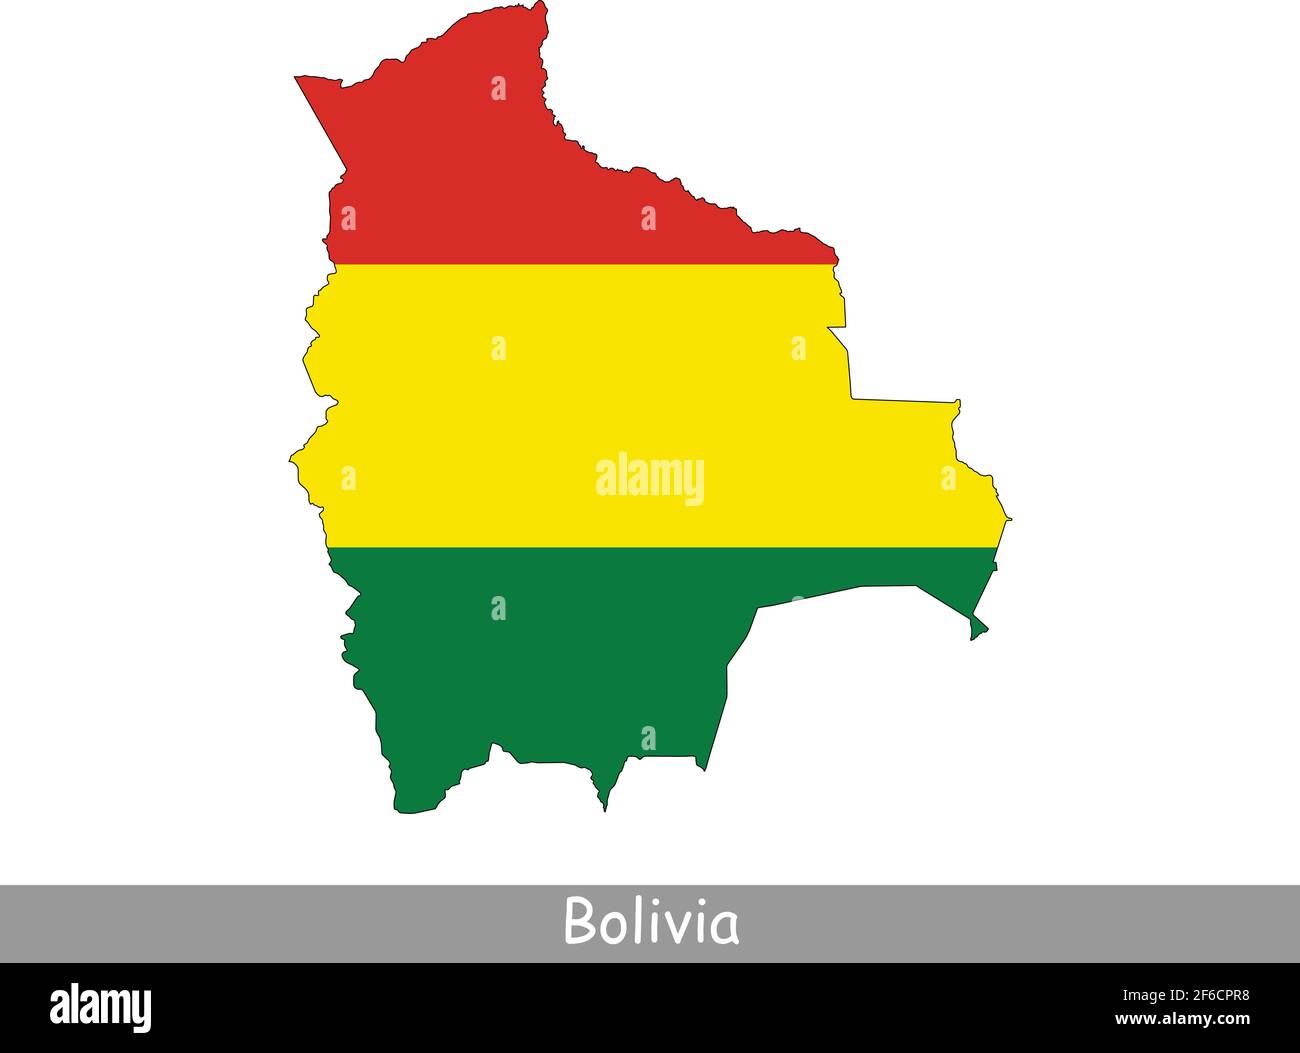 Drapeau carte Bolivie. Carte de la Bolivie avec le drapeau national bolivien isolé sur fond blanc. Illustration vectorielle. Illustration de Vecteur